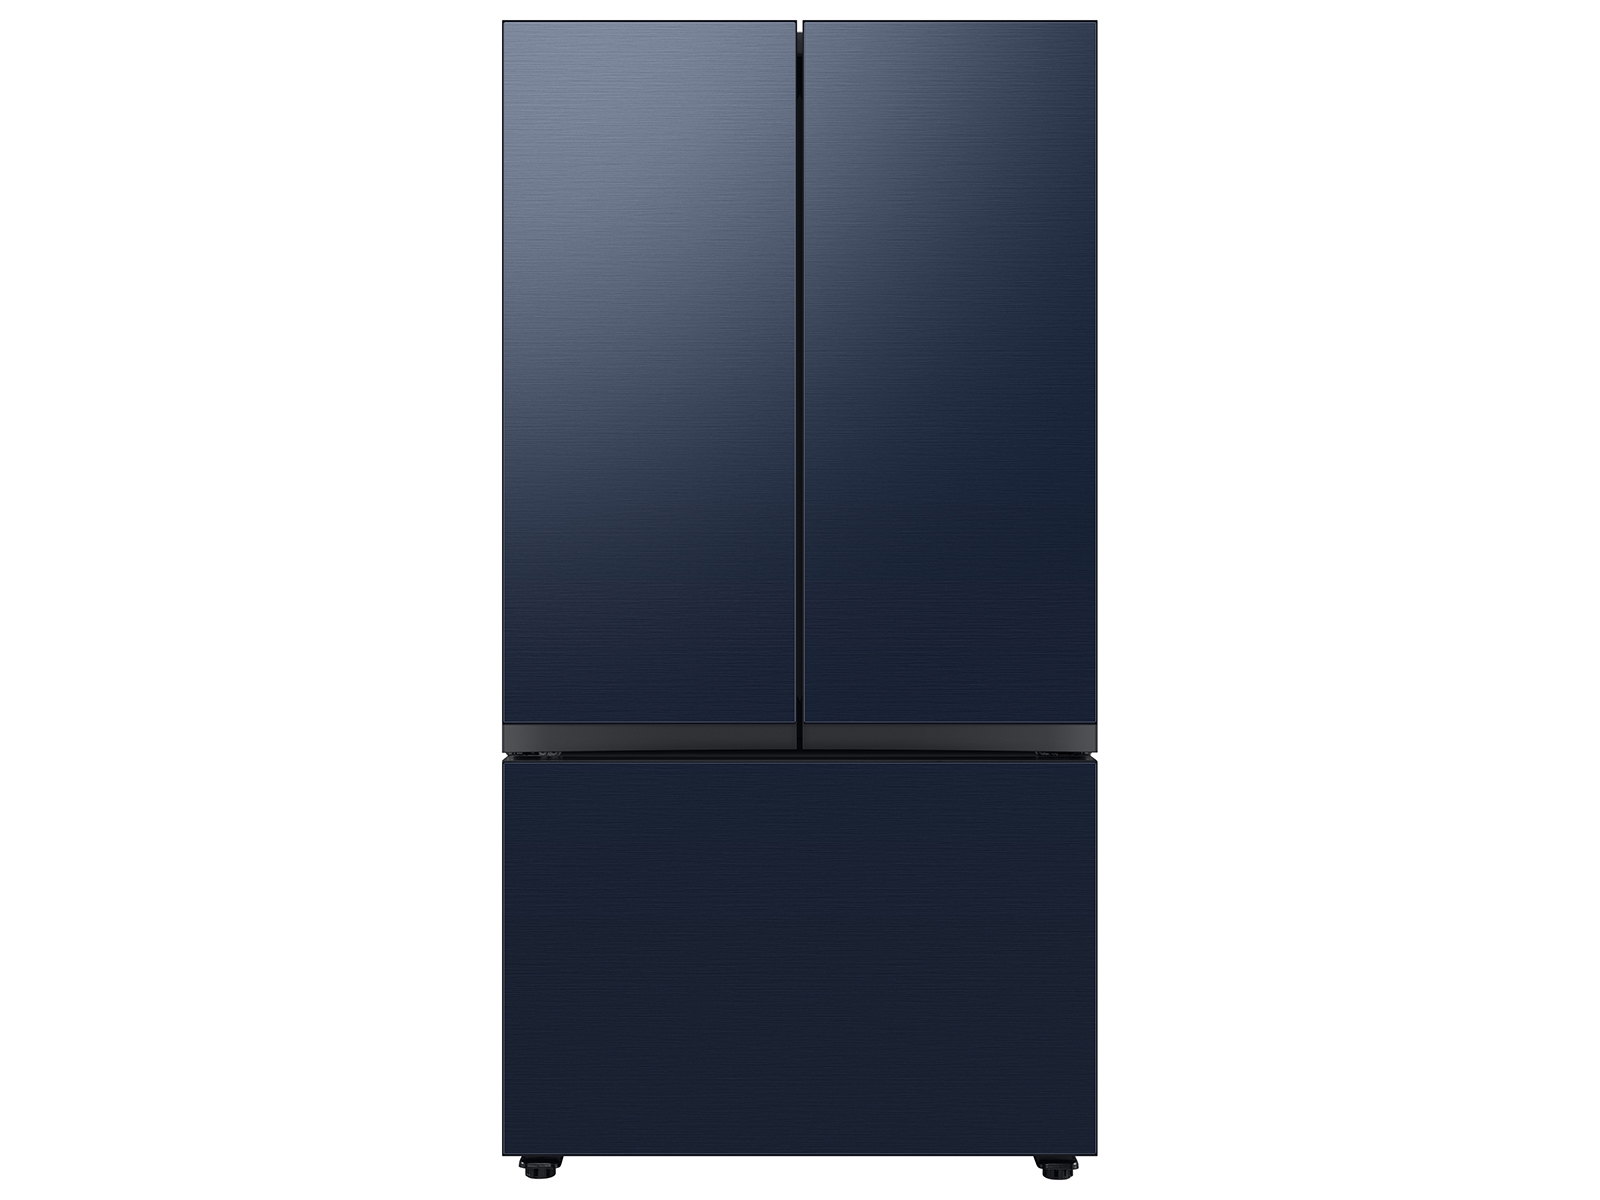 Bespoke 3-Door French Door Refrigerator (24 cu. ft.) with Beverage Center™ in Navy Steel